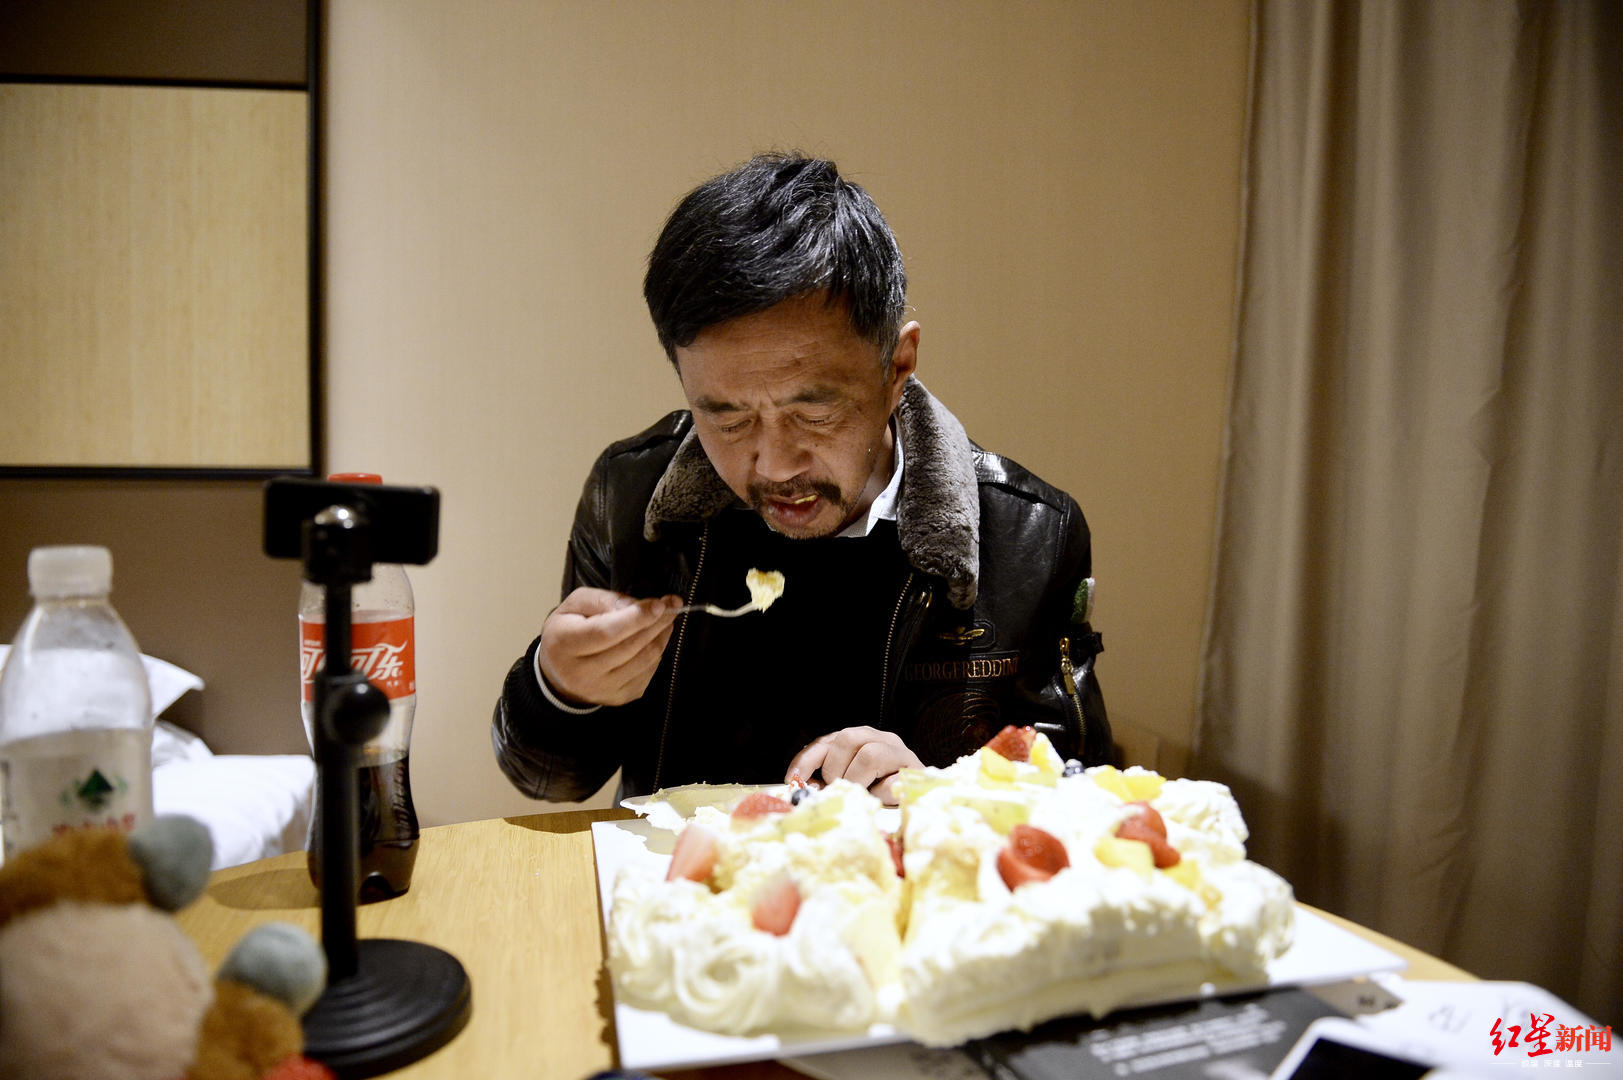  ▲ 一位粉丝为沈巍送上大大的生日蛋糕，并不喜欢吃蛋糕的他不忍浪费，直播结束后当晚饭吃了些。